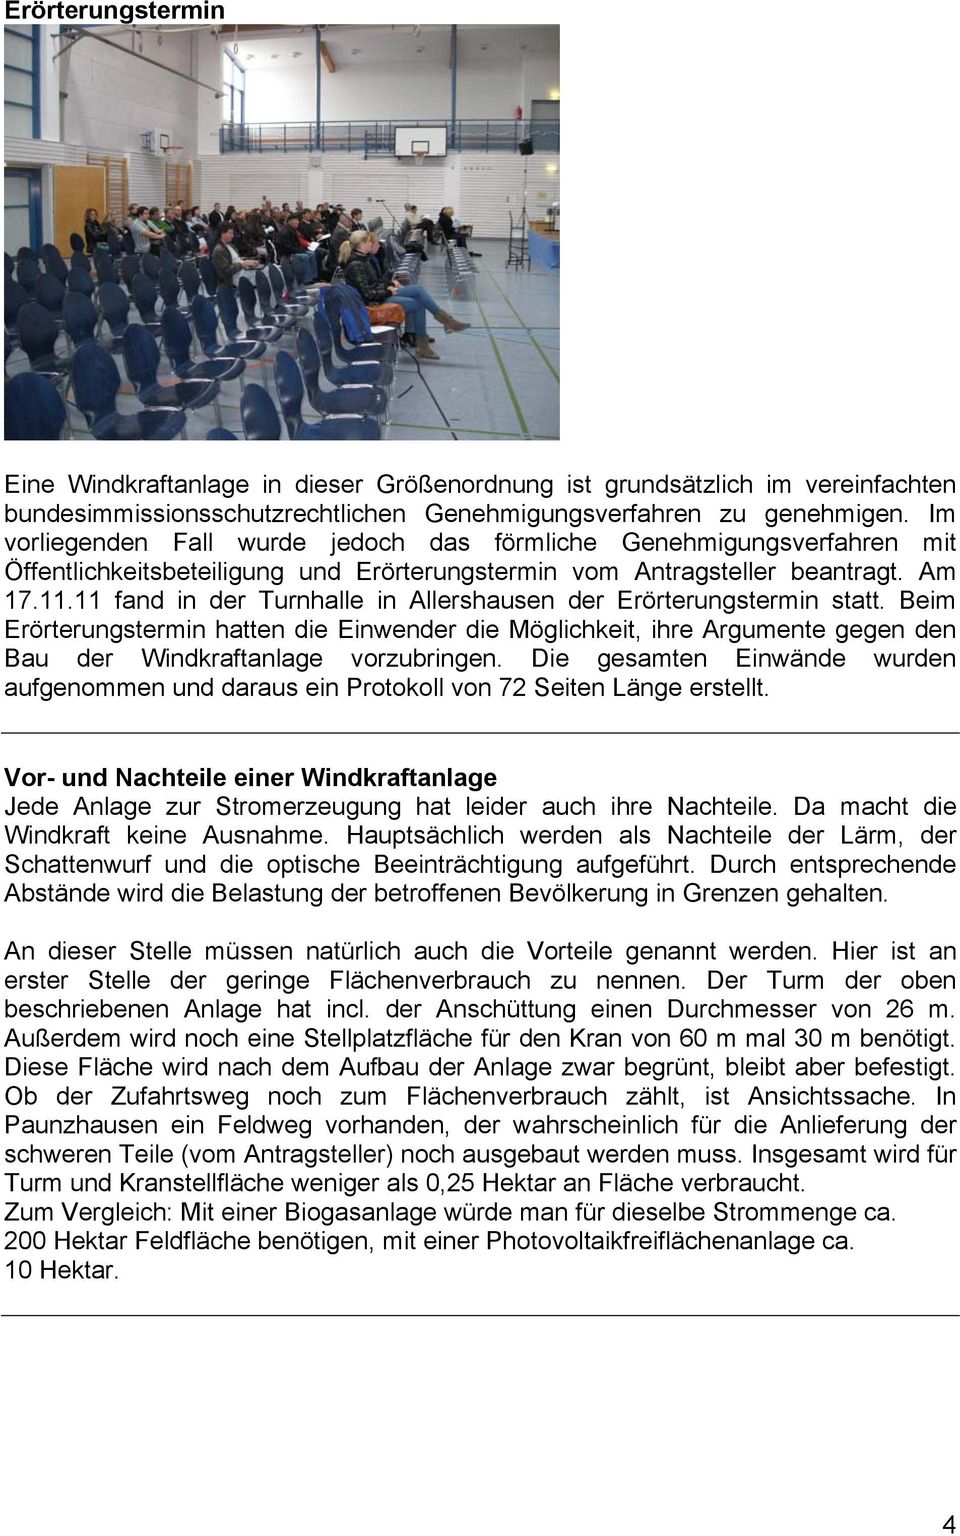 11 fand in der Turnhalle in Allershausen der Erörterungstermin statt. Beim Erörterungstermin hatten die Einwender die Möglichkeit, ihre Argumente gegen den Bau der Windkraftanlage vorzubringen.